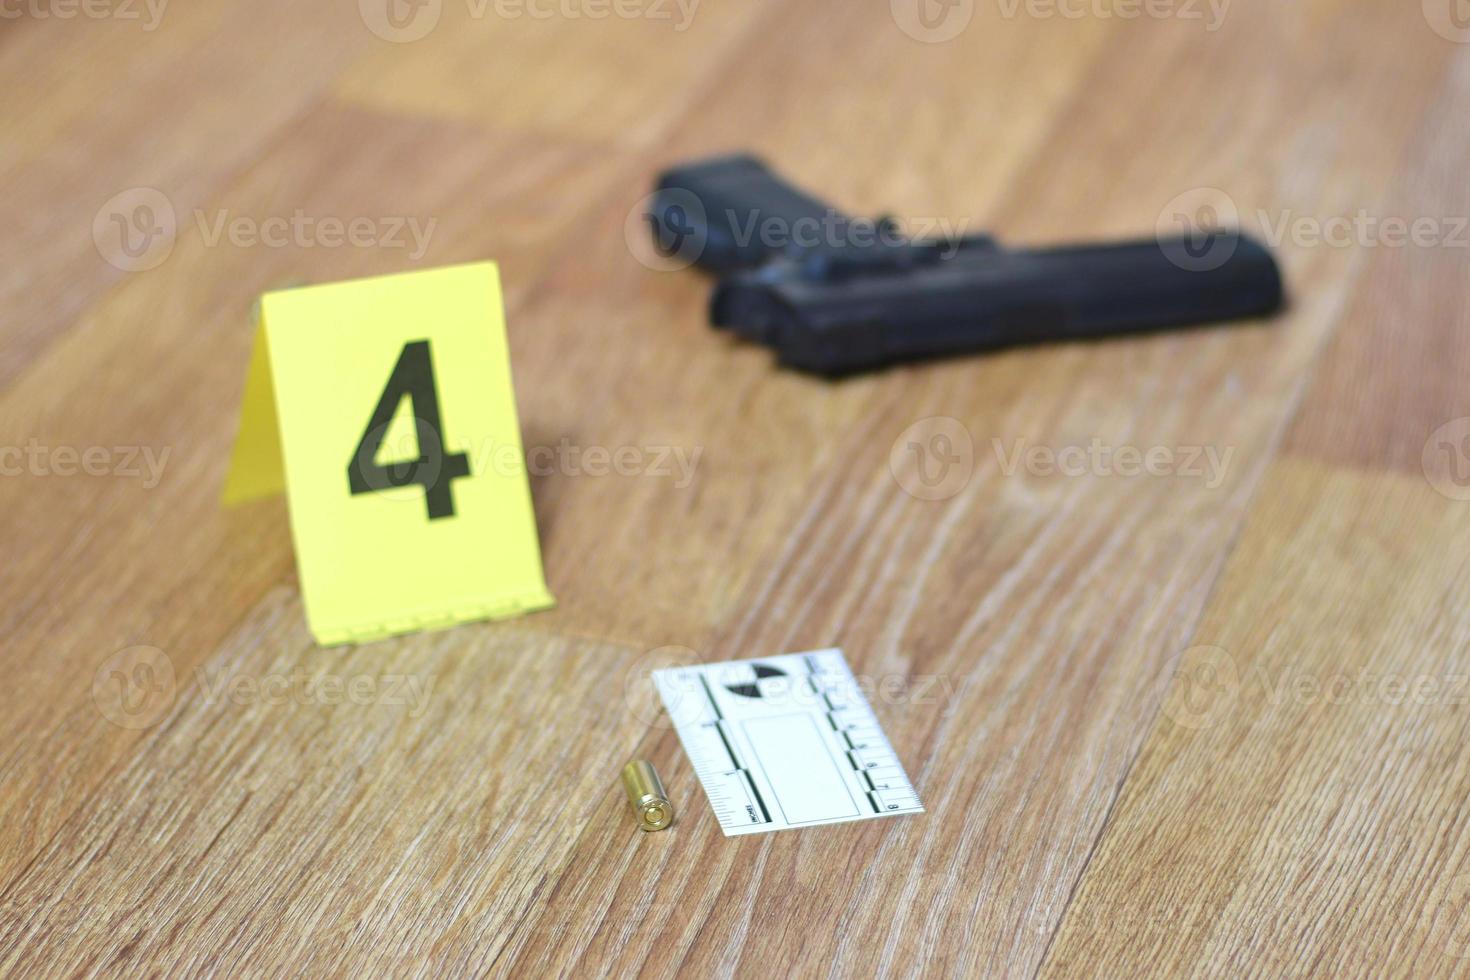 brottslighet scen undersökning begrepp - pistol och kula skal mot de gul brottslighet markör på lägenhet golv foto